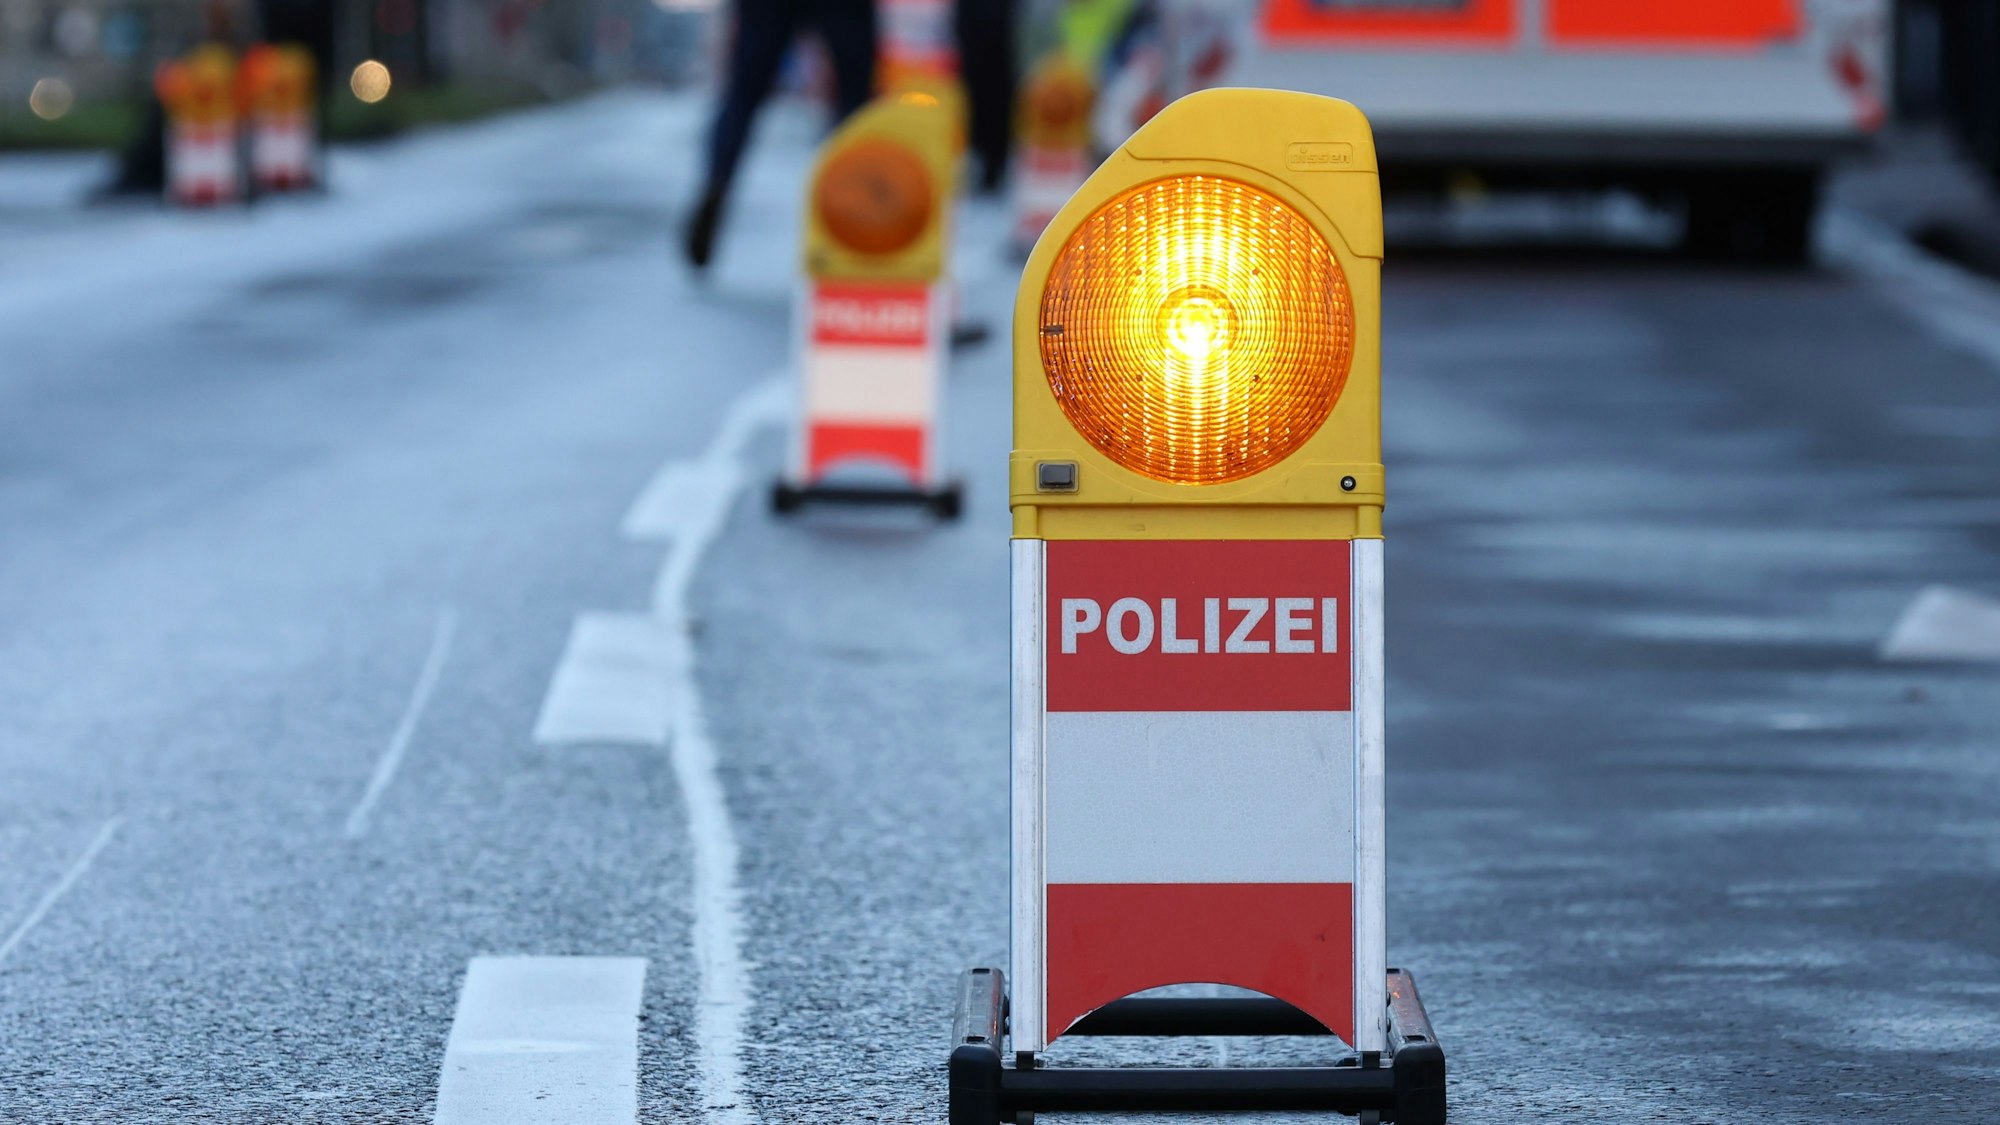 Polizei-Warnbake auf der Straße (Symbolbild)